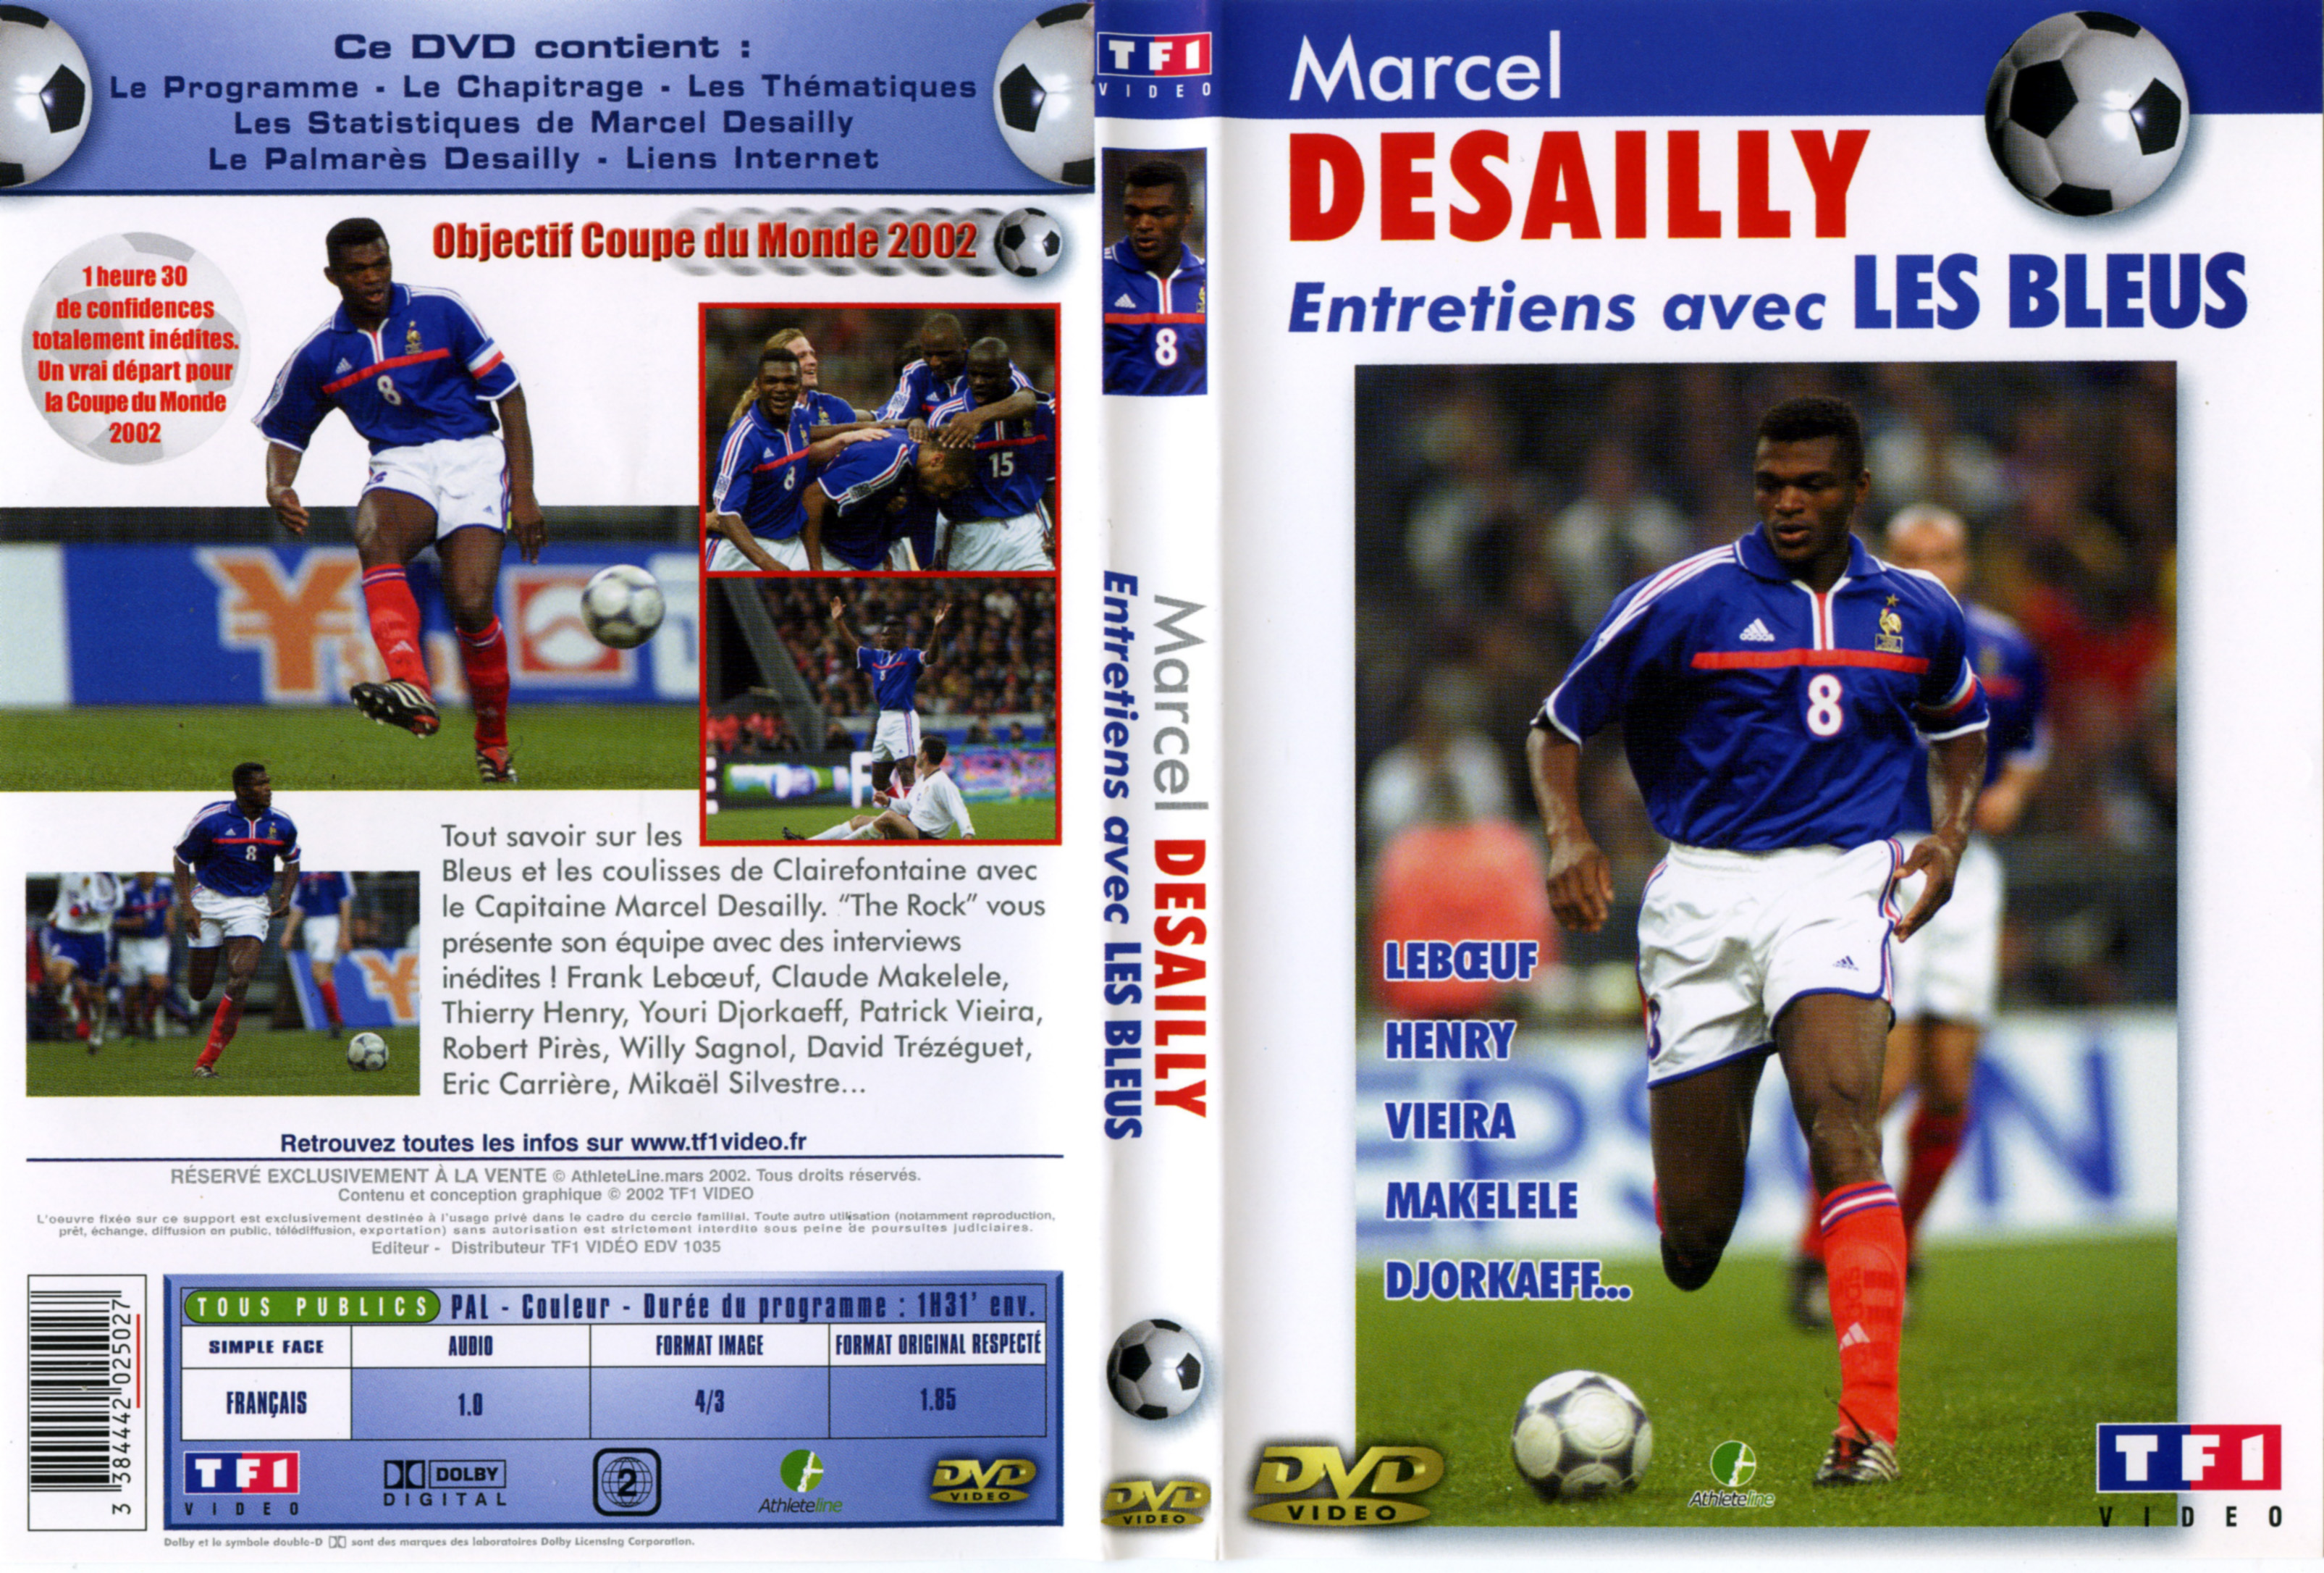 Jaquette DVD Marcel Desailly Entretiens avec les Bleus